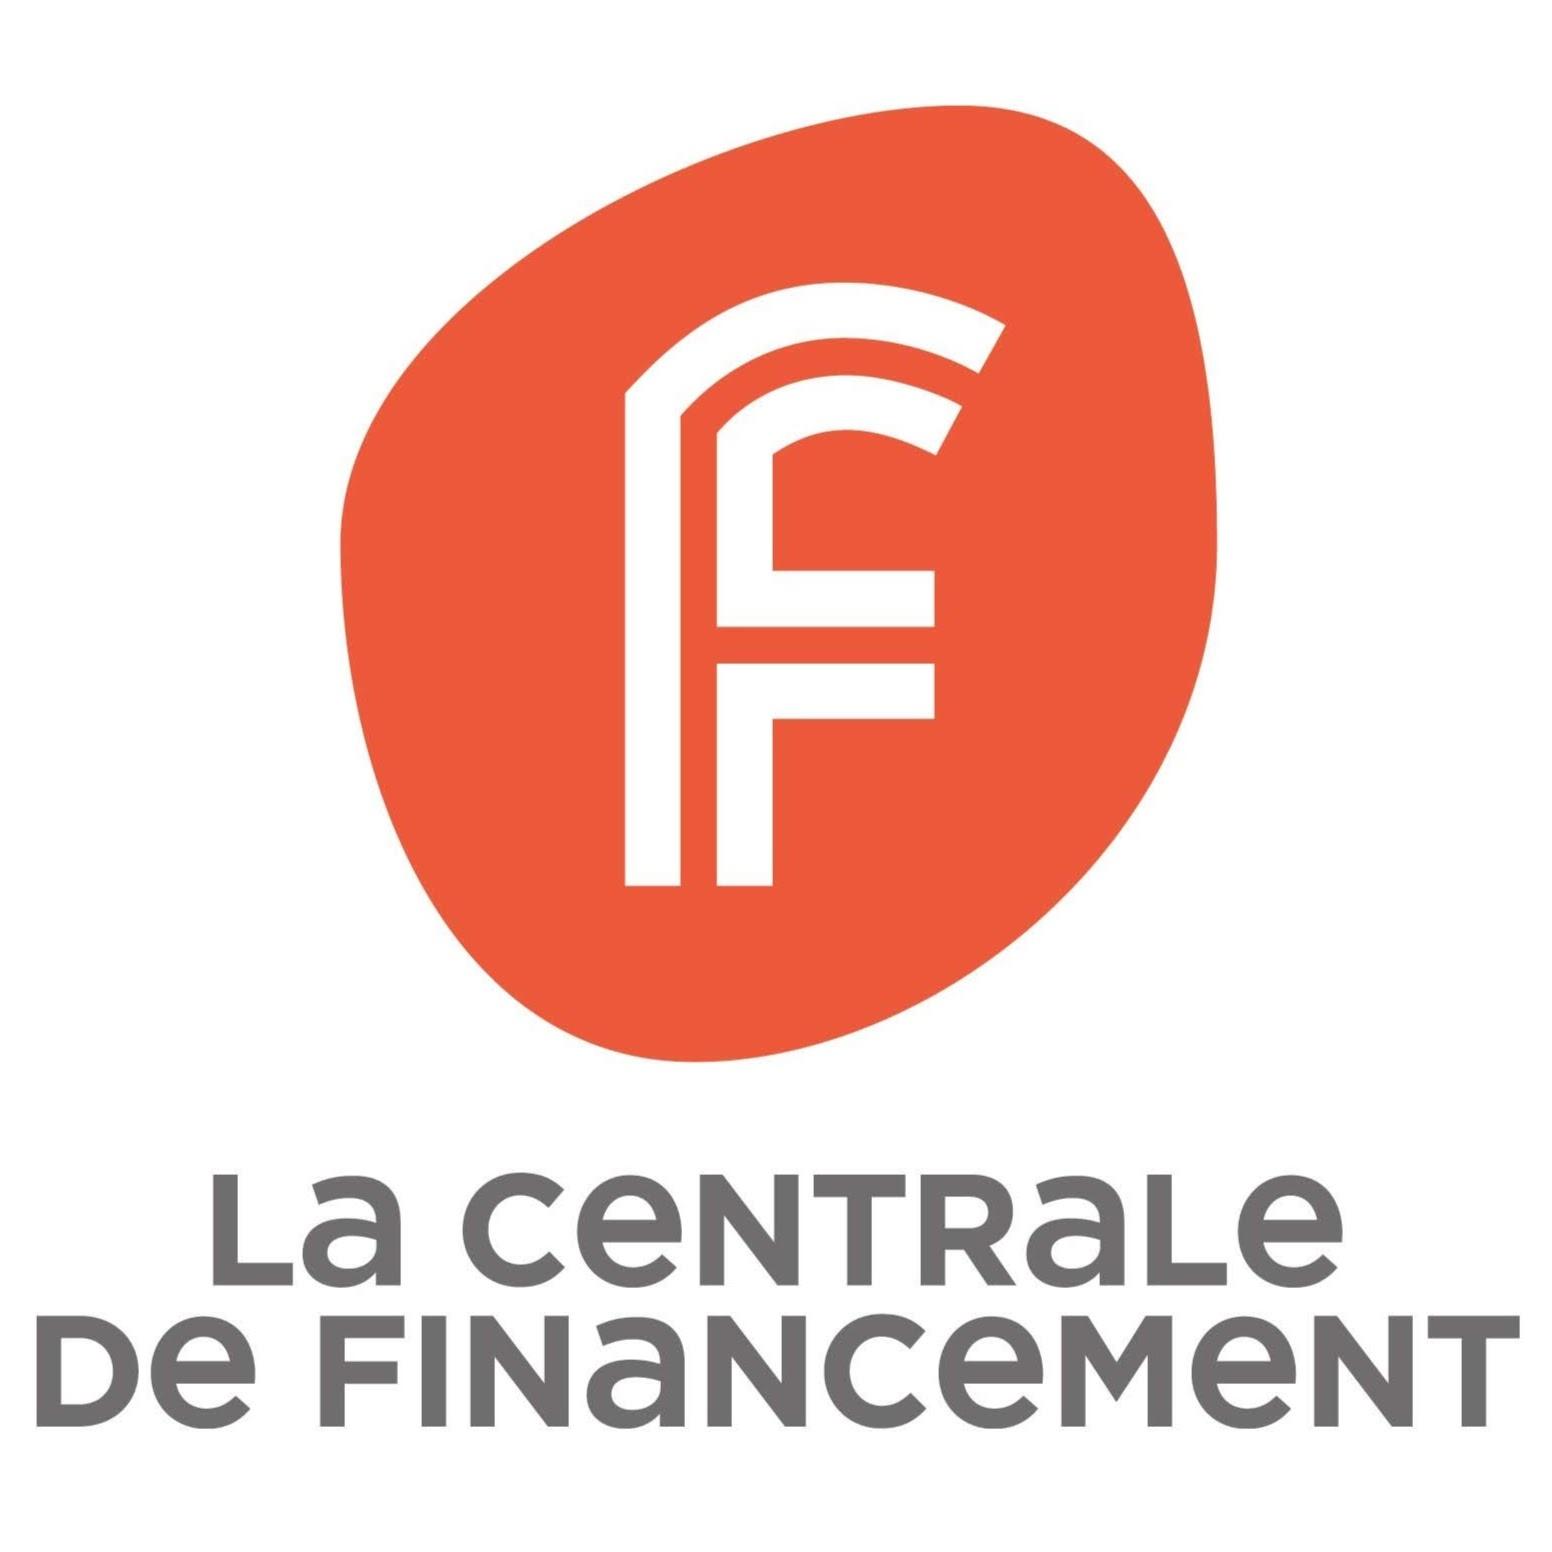 La Centrale De Financement Villejuif